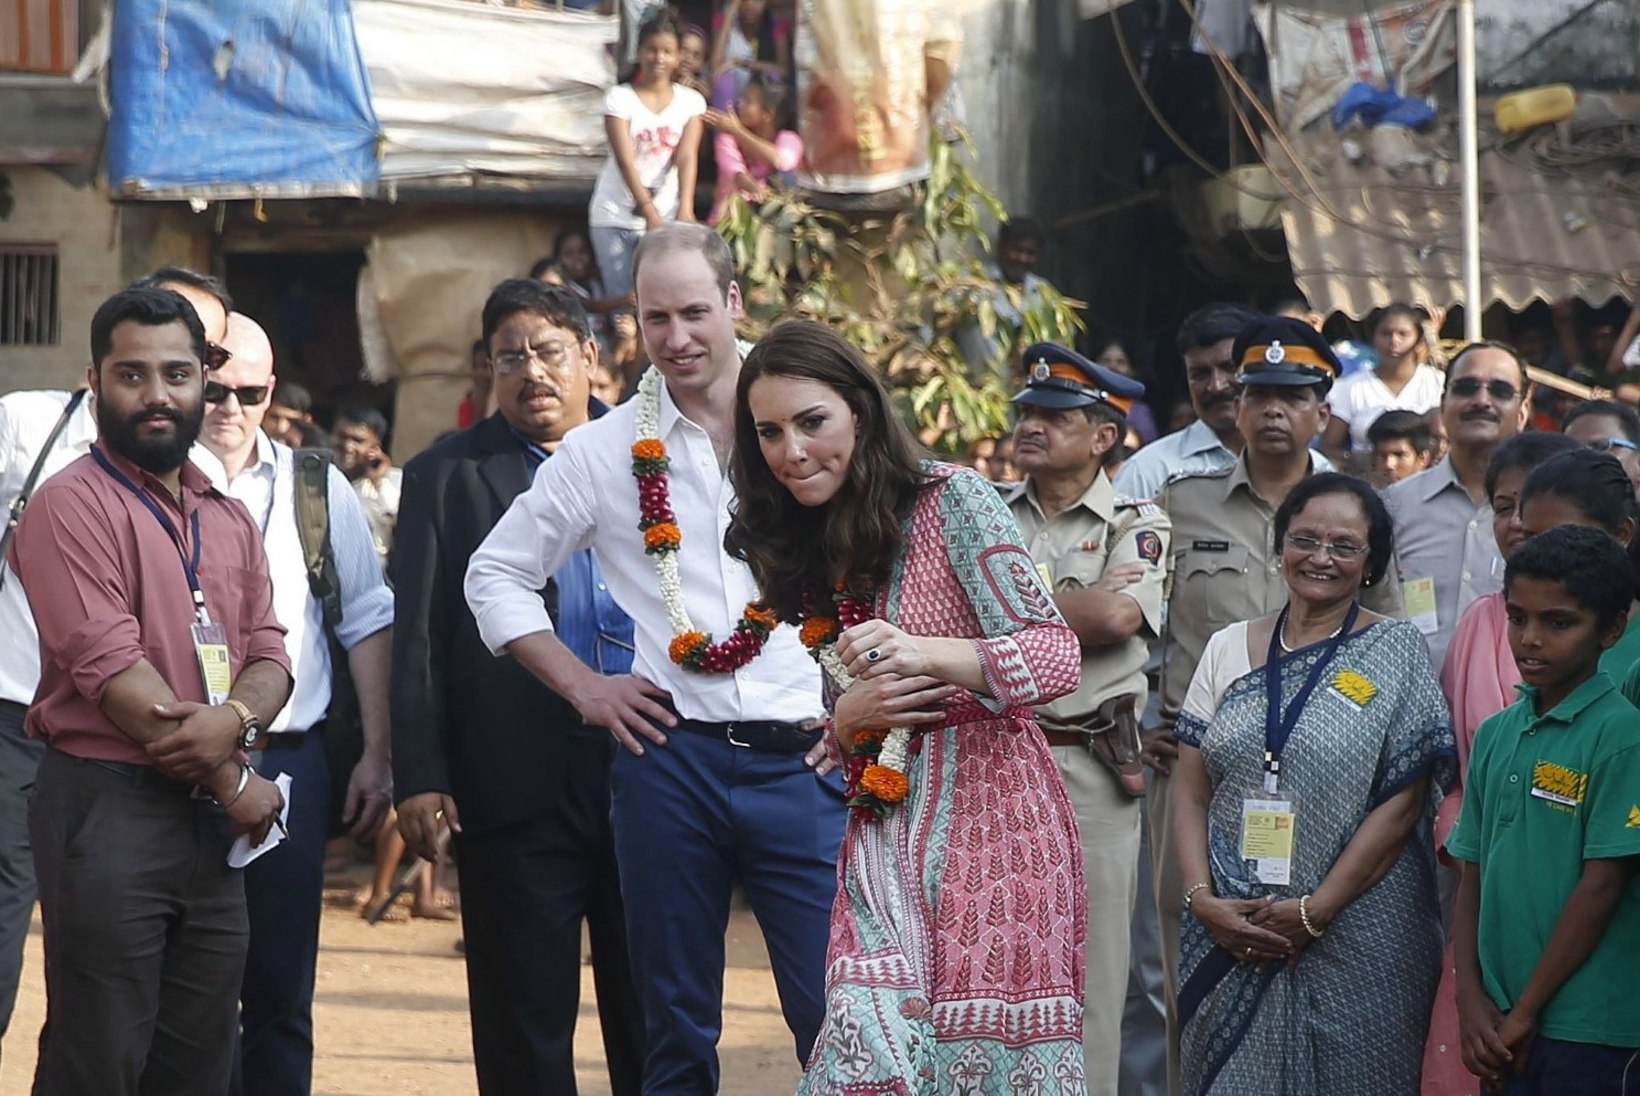 FOTOD | Prints William ja Hertsoginna Catherine lustisid Mumbais lastega palli mängides